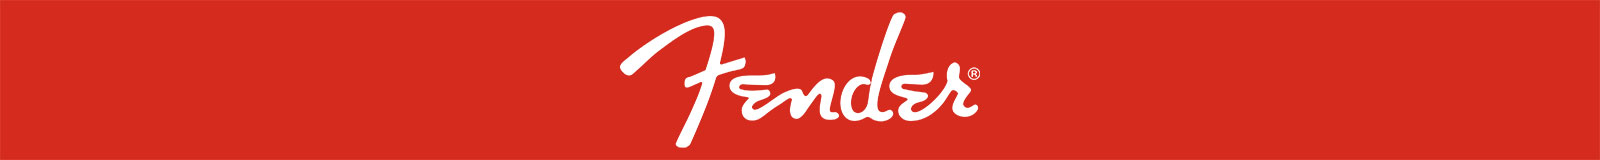 Fender White Logo Red Background